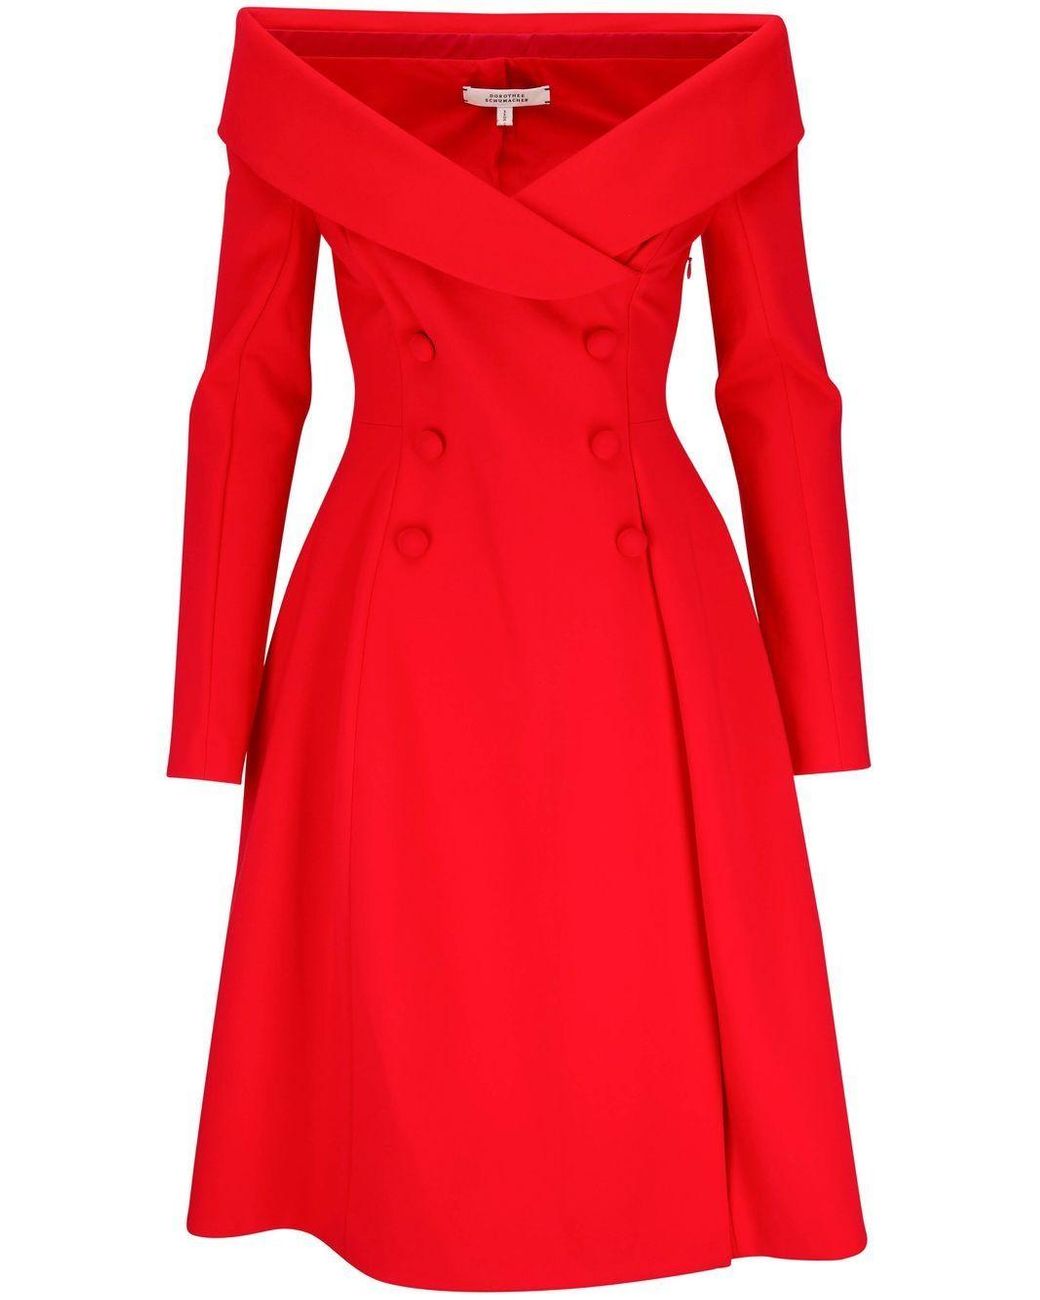 Dorothee Schumacher Open-shoulder Tuxedo Dress in Red | Lyst